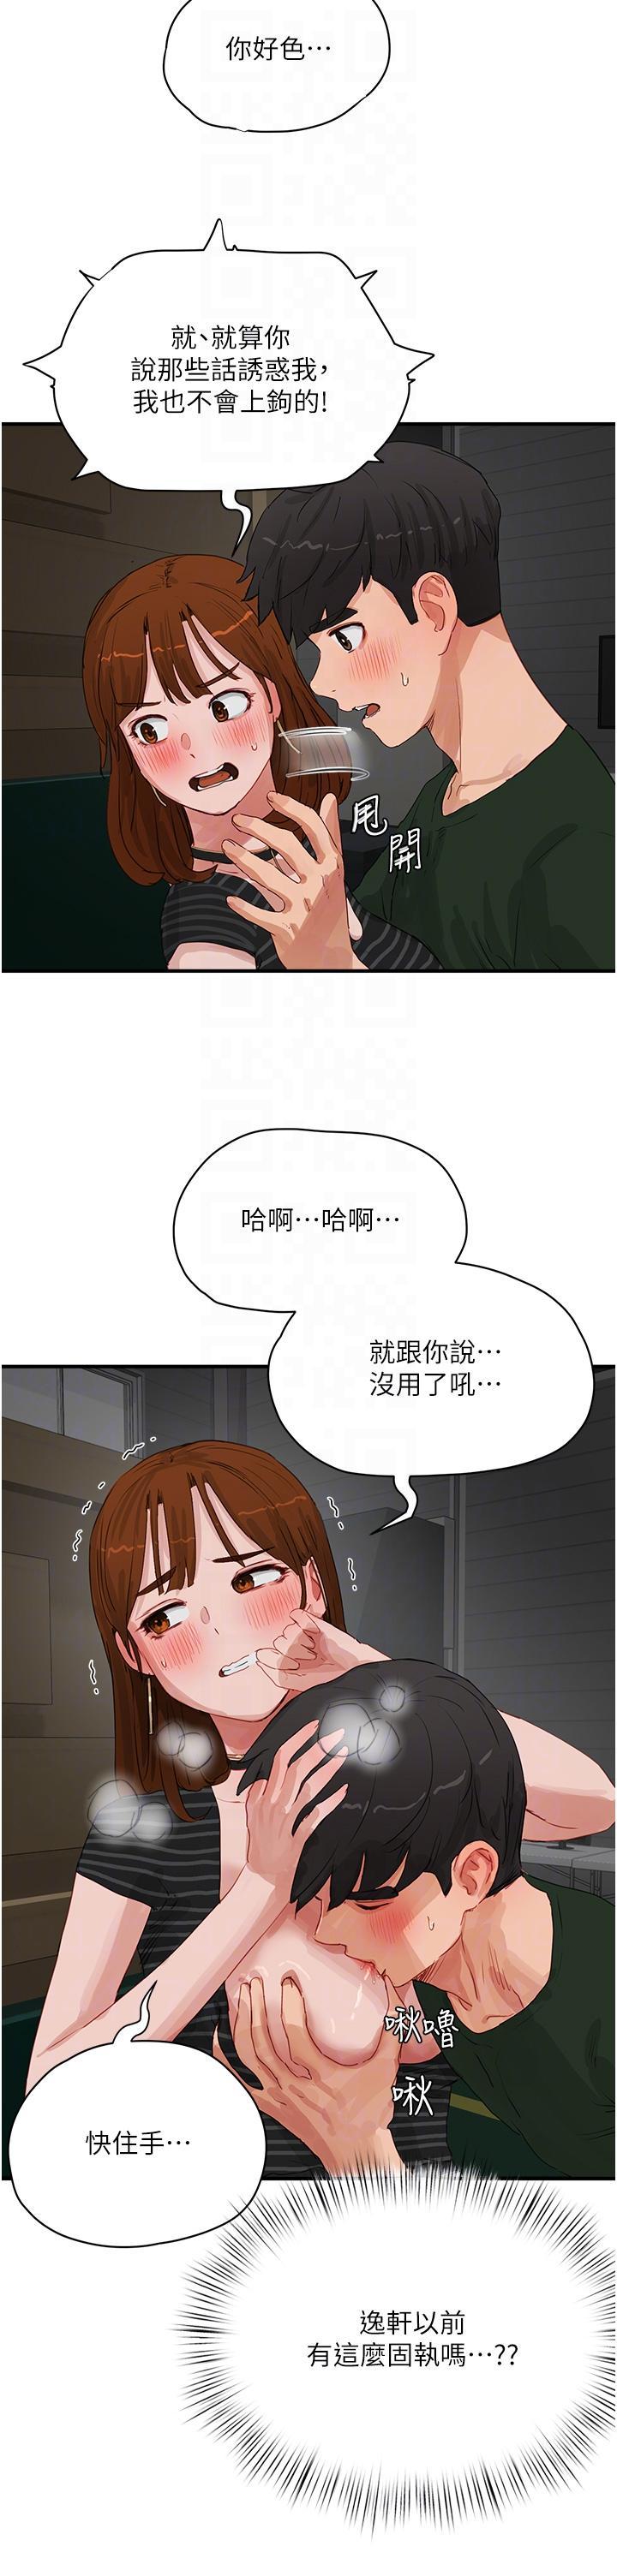 韩国污漫画 夏日深處 第68话 爱上SM的荷昀 18